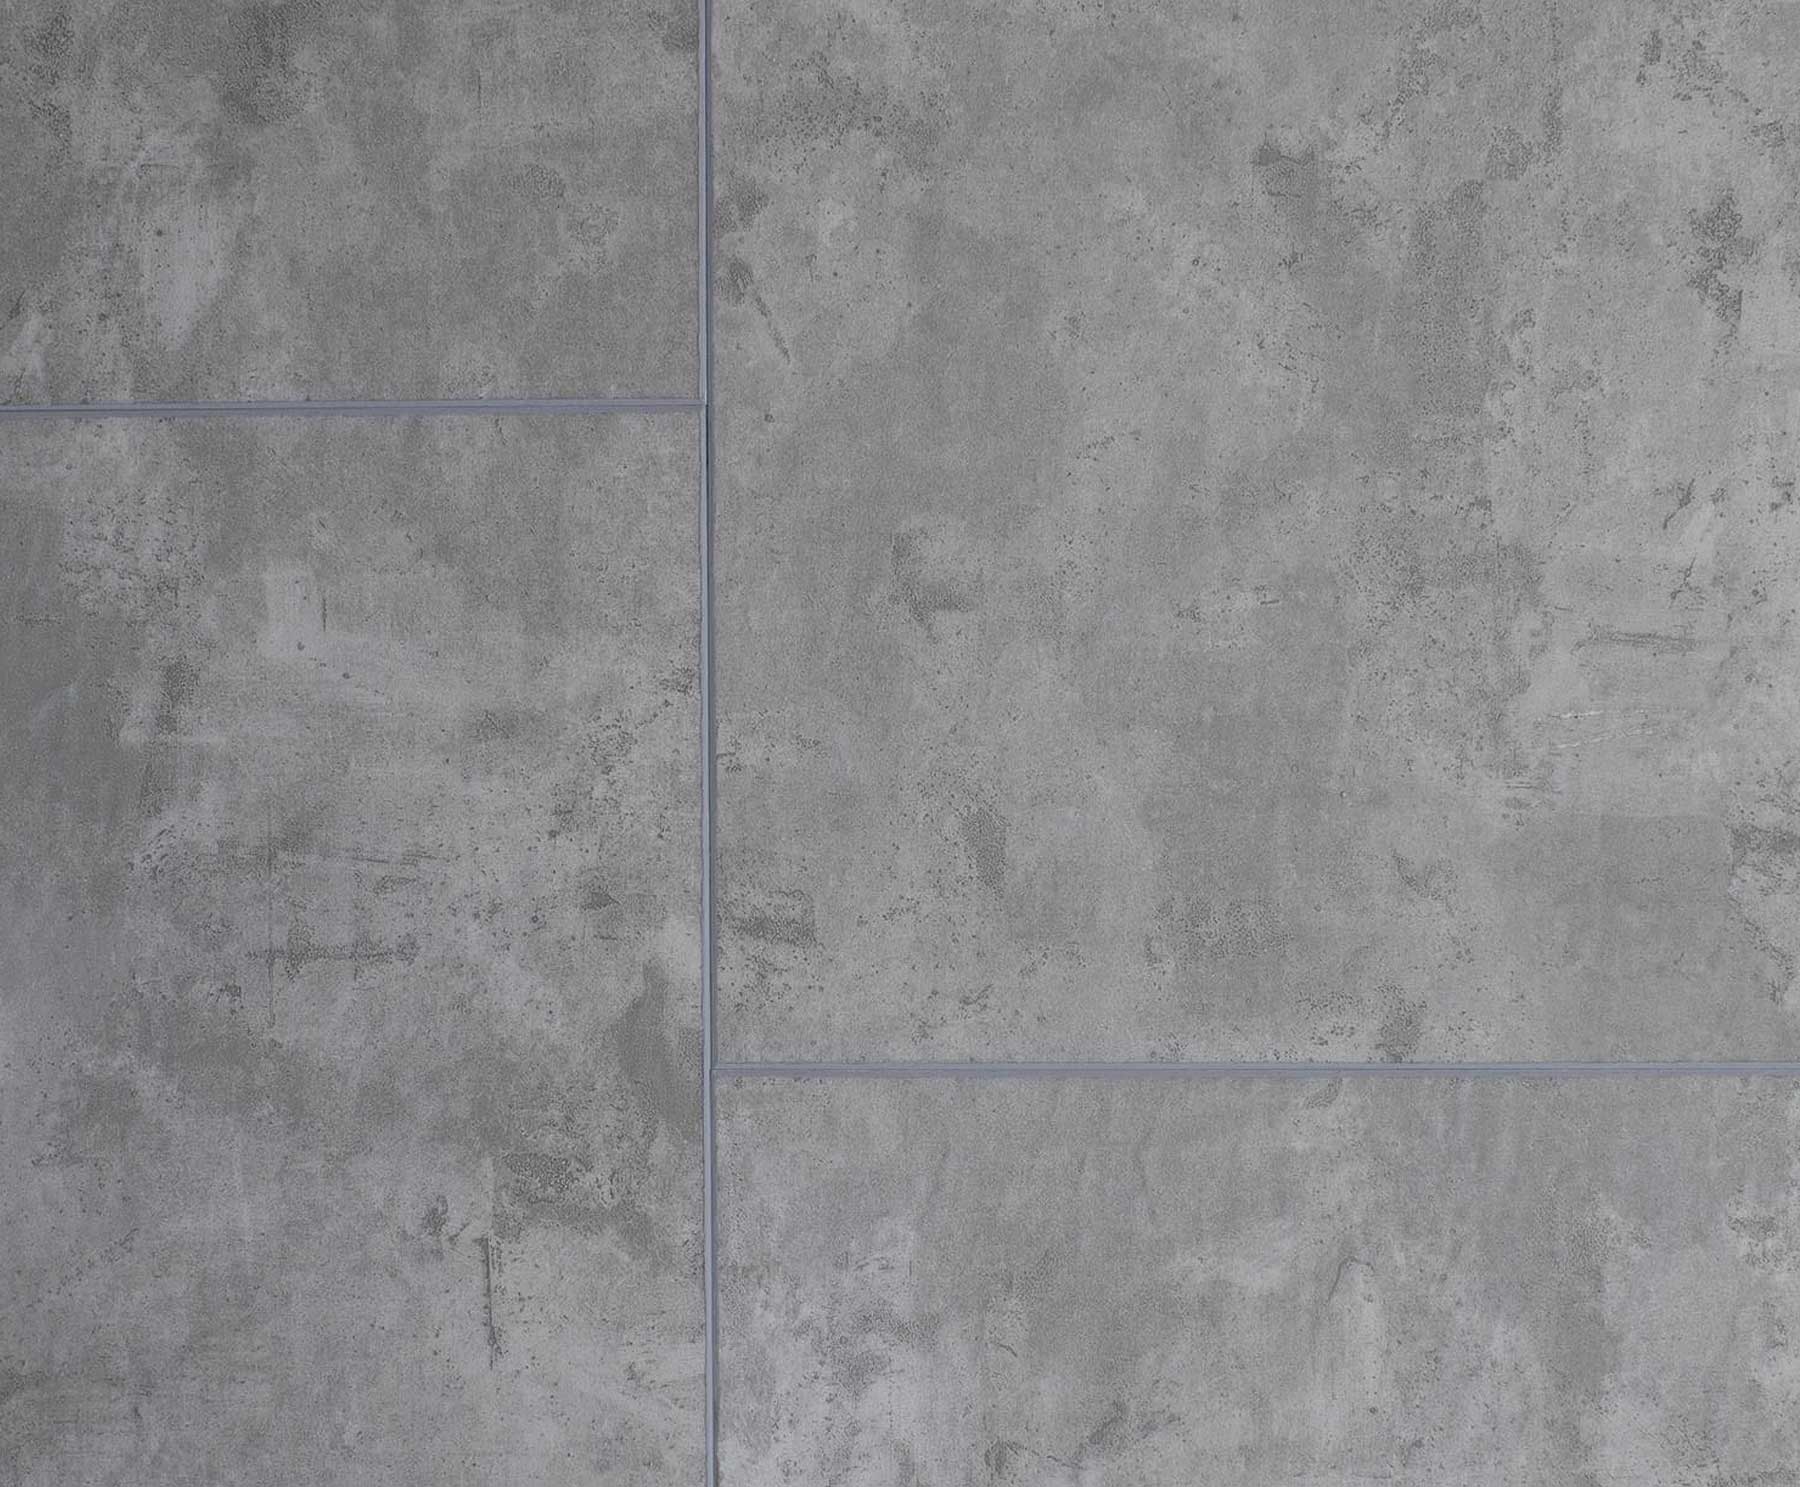 Axiscor Axis PRO12 Urban Concrete Floor Sample